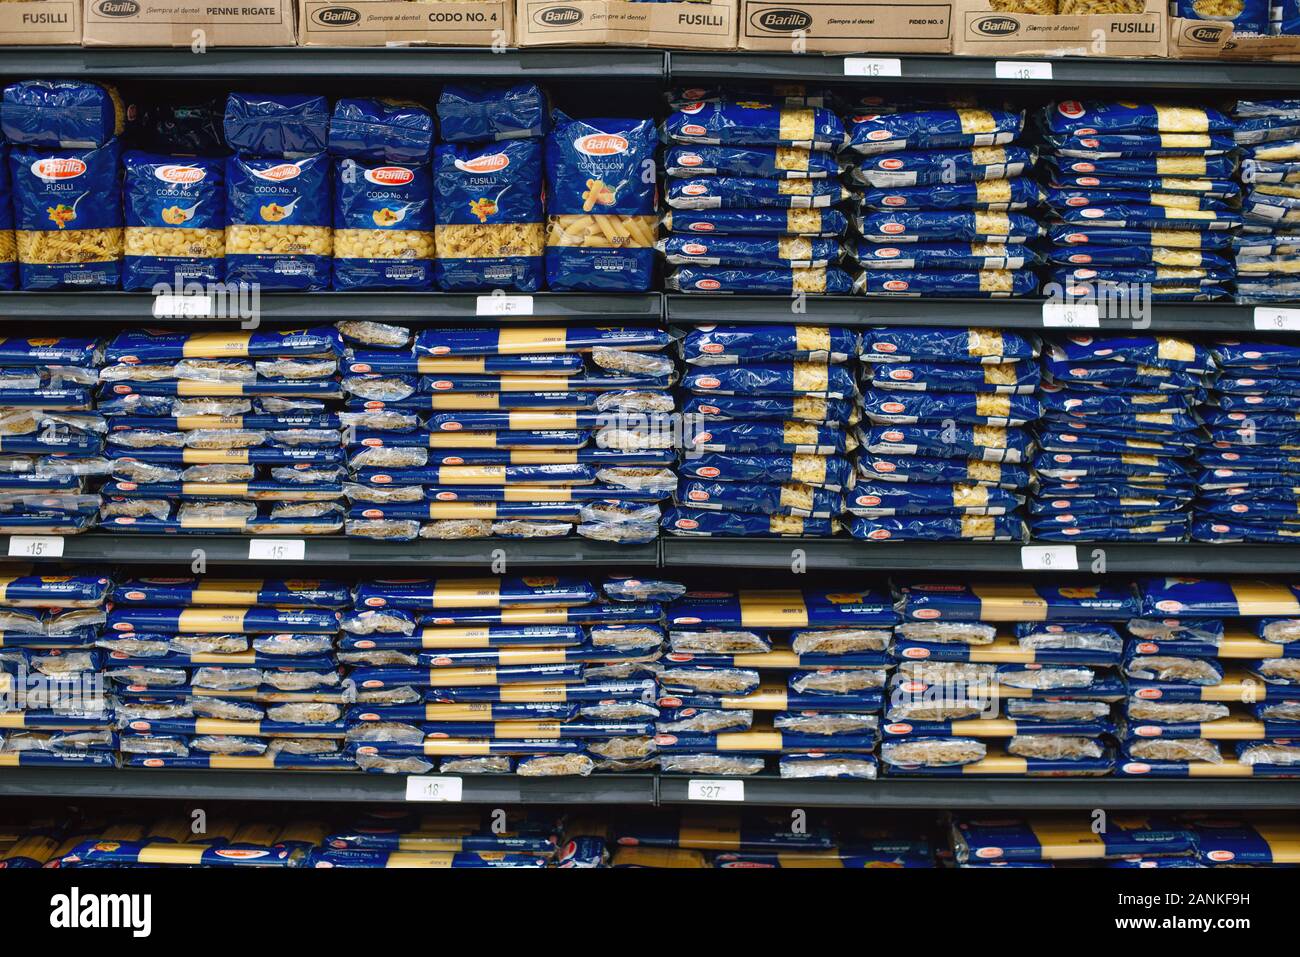 Mexiko, Cancun - Dezember, 2019: Sortiert box von Barilla Pasta zum Verkauf  im Supermarkt Regale verpackt Stockfotografie - Alamy